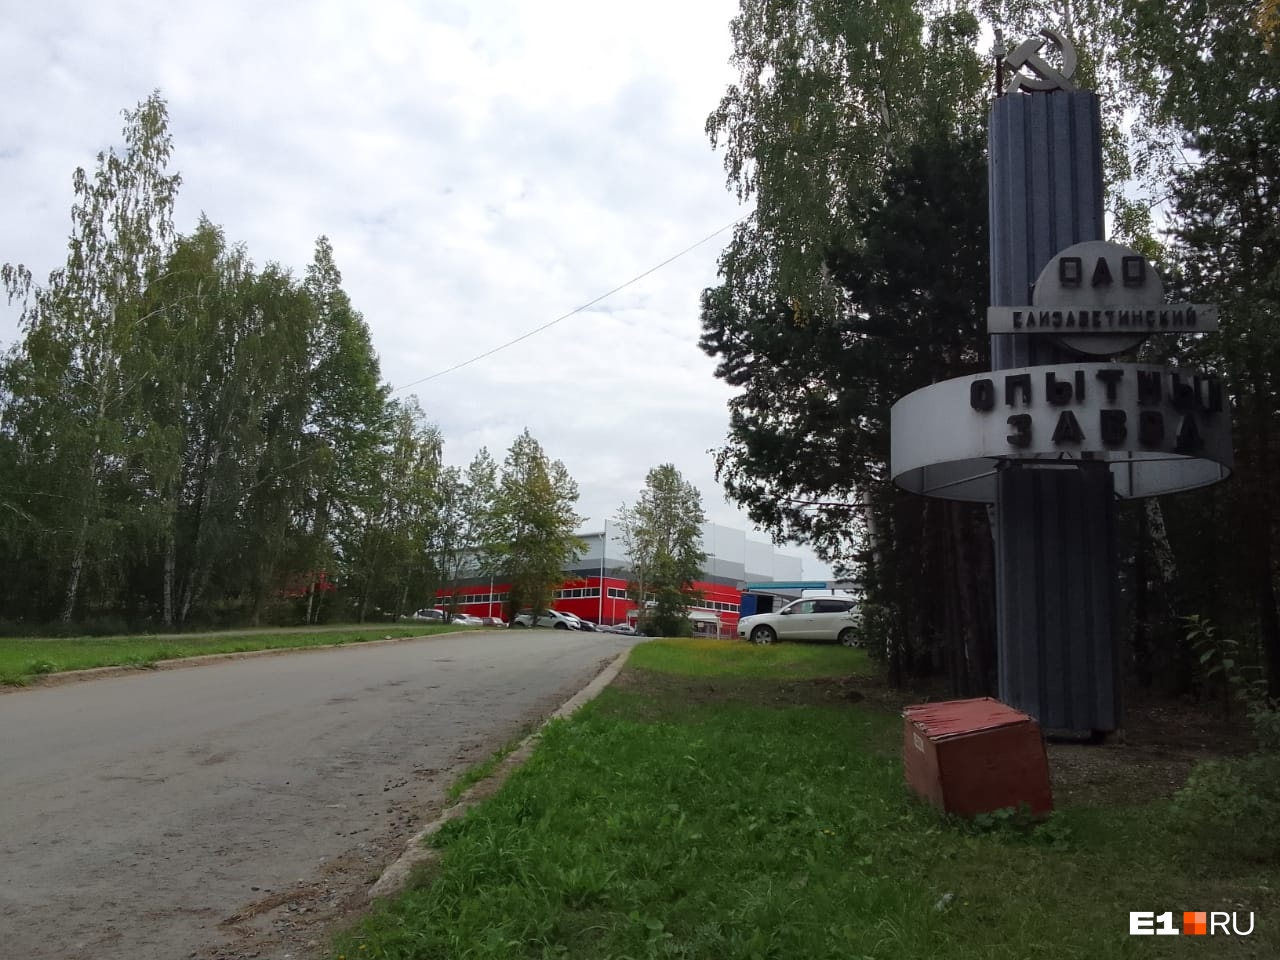 «Пахло серой, химикатами какими-то»: откуда взялся едкий дым в поселке Рудном в Екатеринбурге